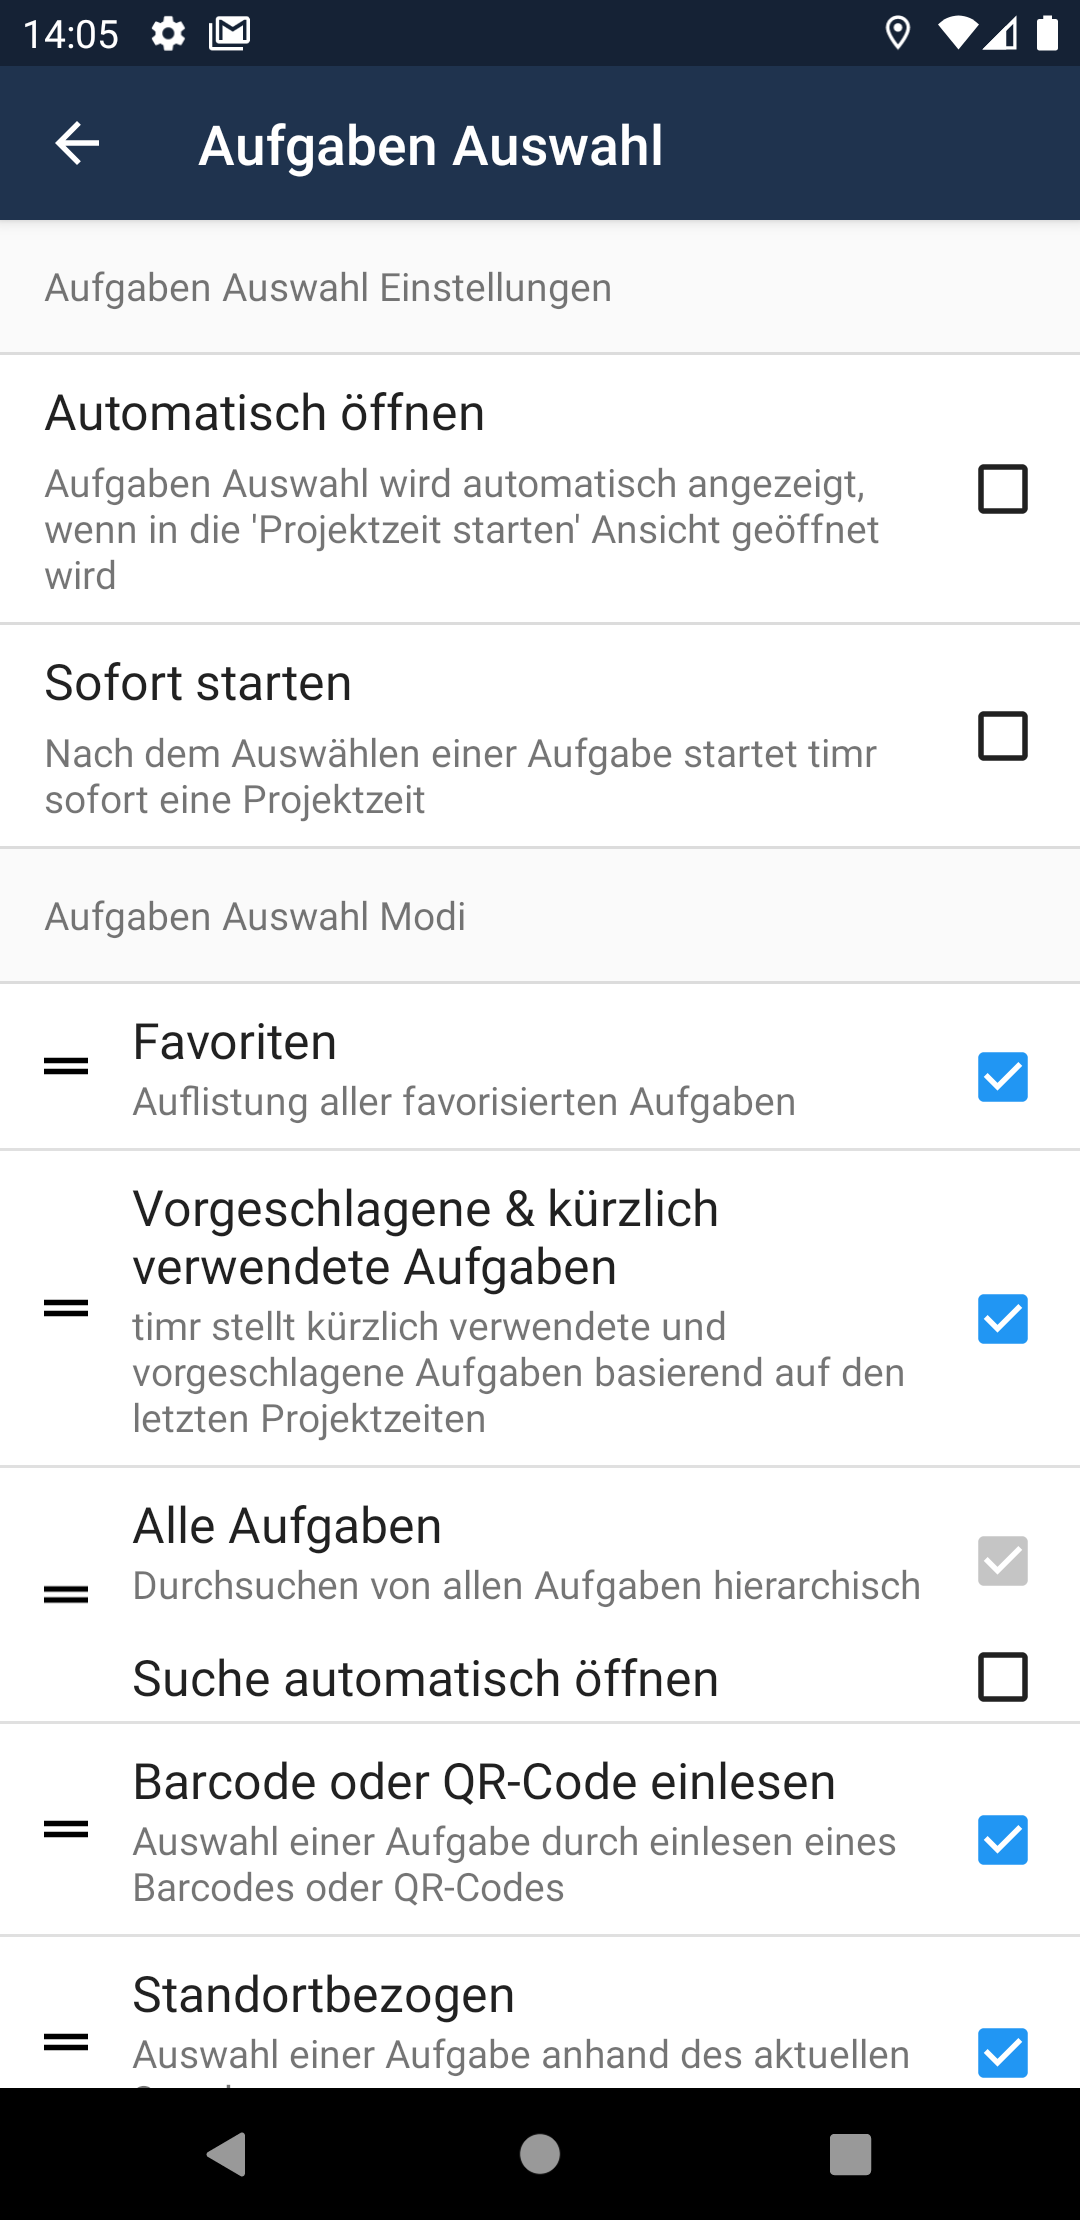 Aufgaben_Auswahl_Android_DE.png